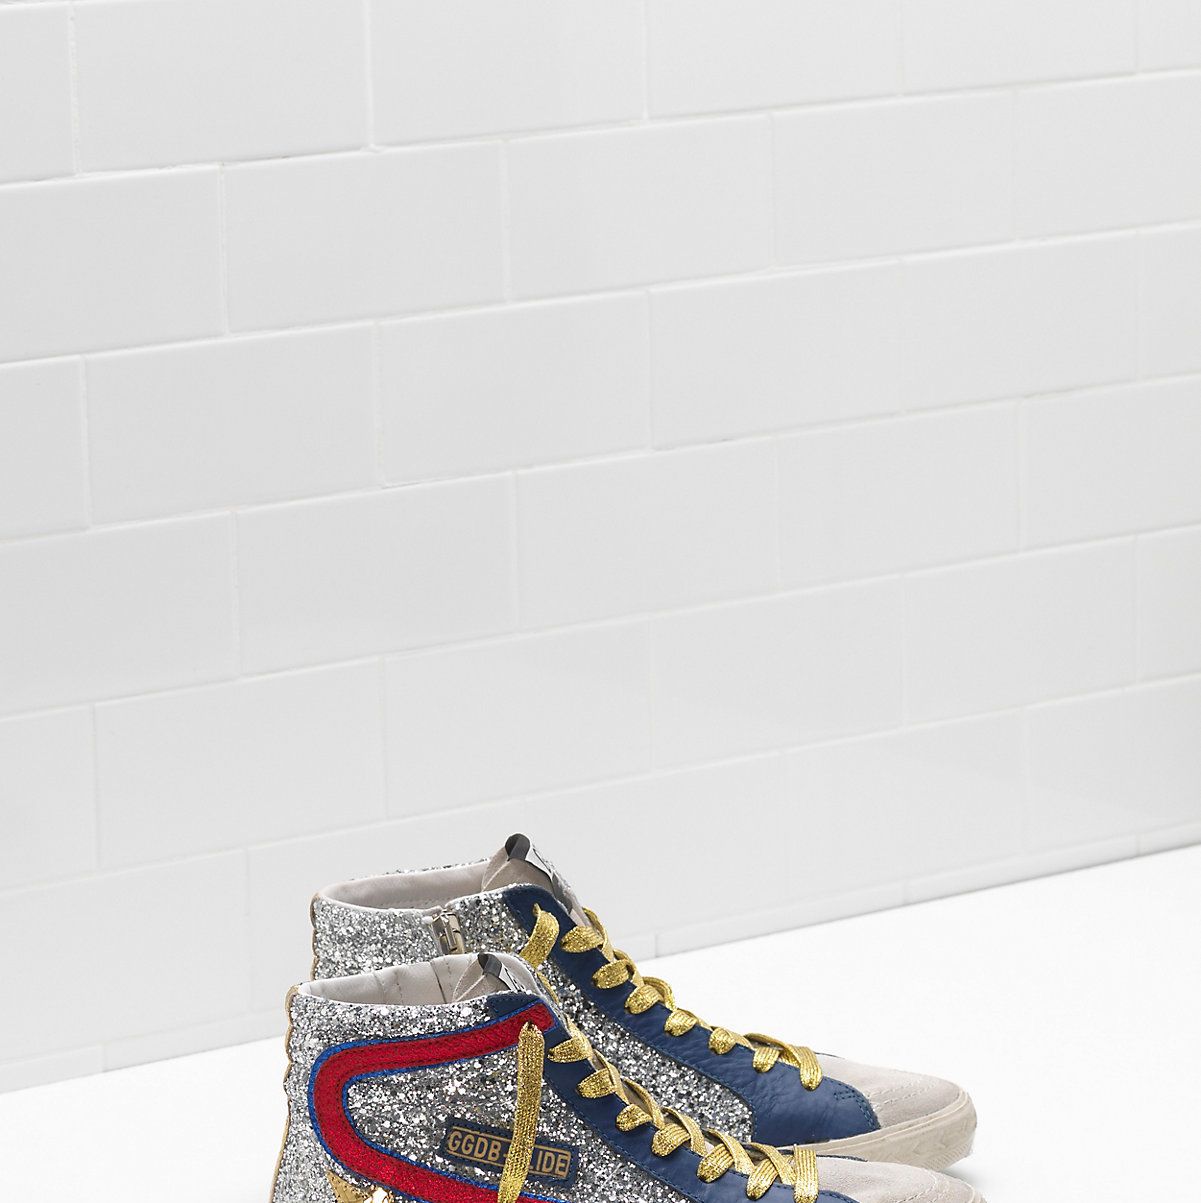 Estas son las zapatillas de moda en Instagram - Goose: son las zapatillas italianas de moda entre las 'influencers'